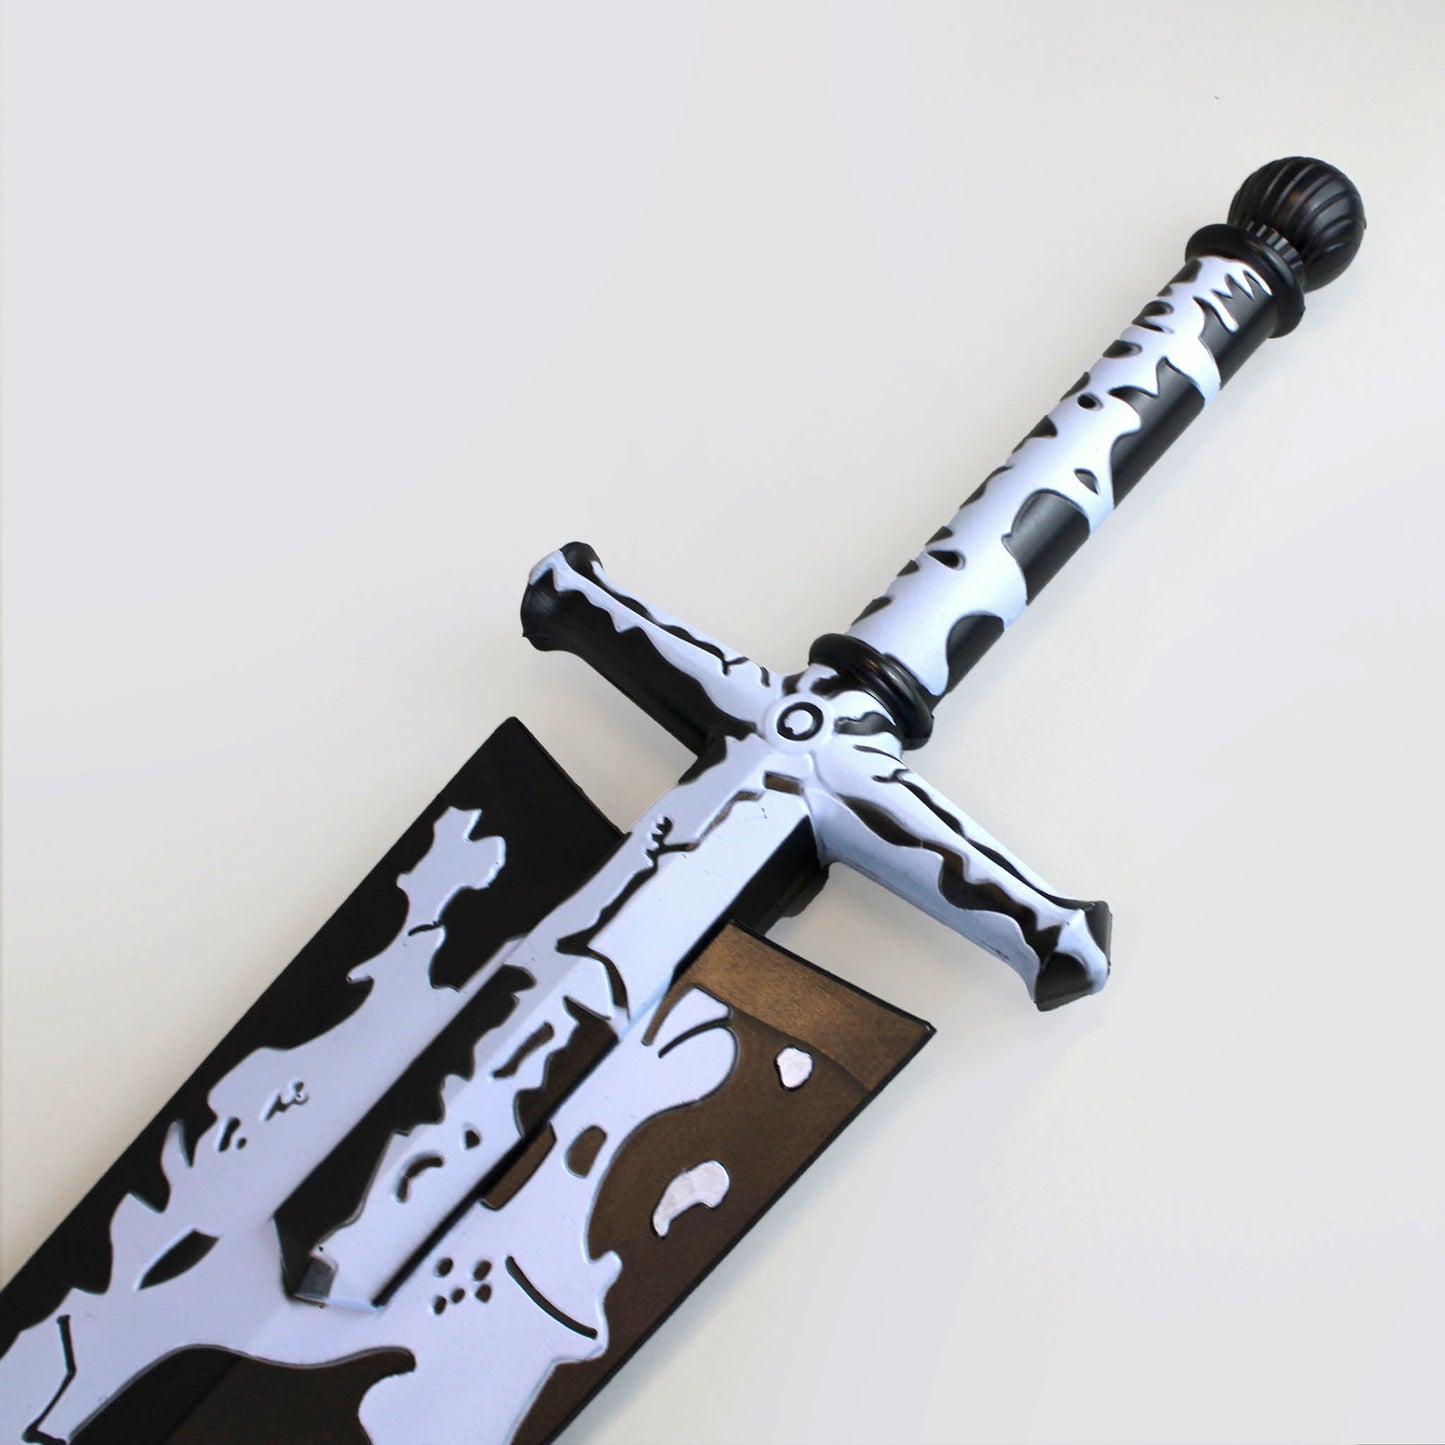 Asta's Demon Slayer Sword (Black Clover) Foam Prop Replica